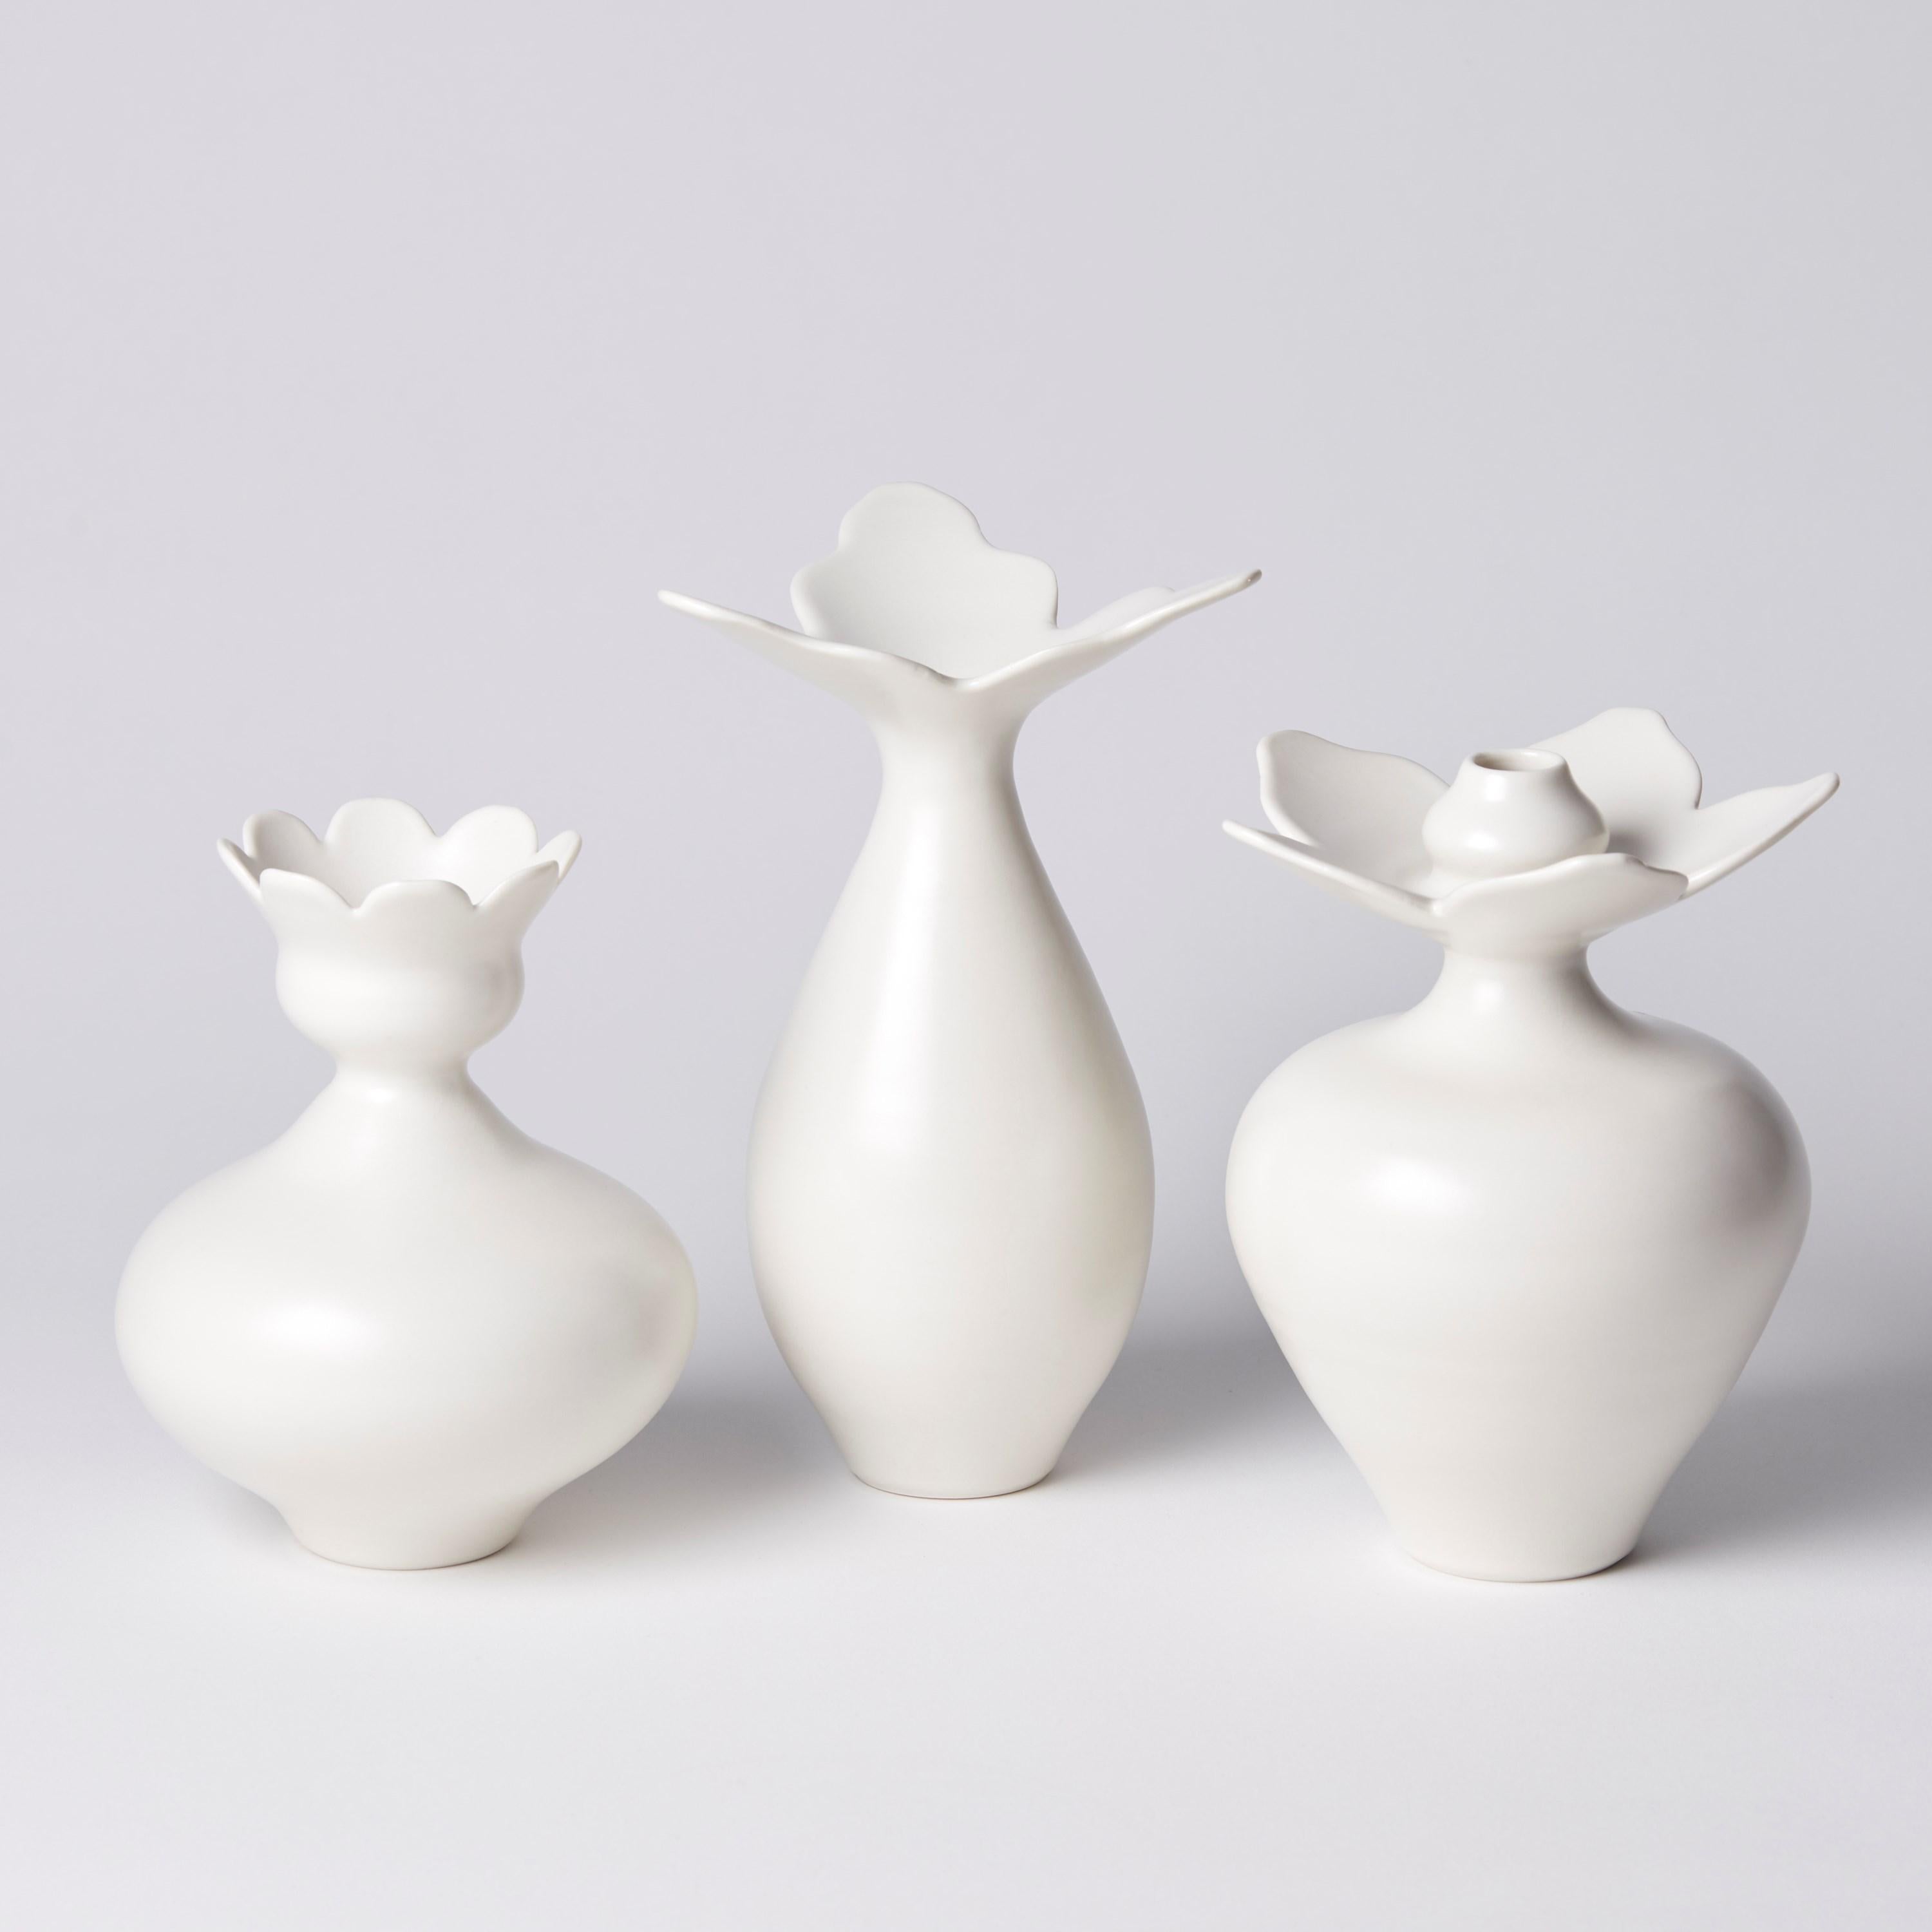 Organic Modern Vase with Daisy Rim, a unique white porcelain vase by Vivienne Foley